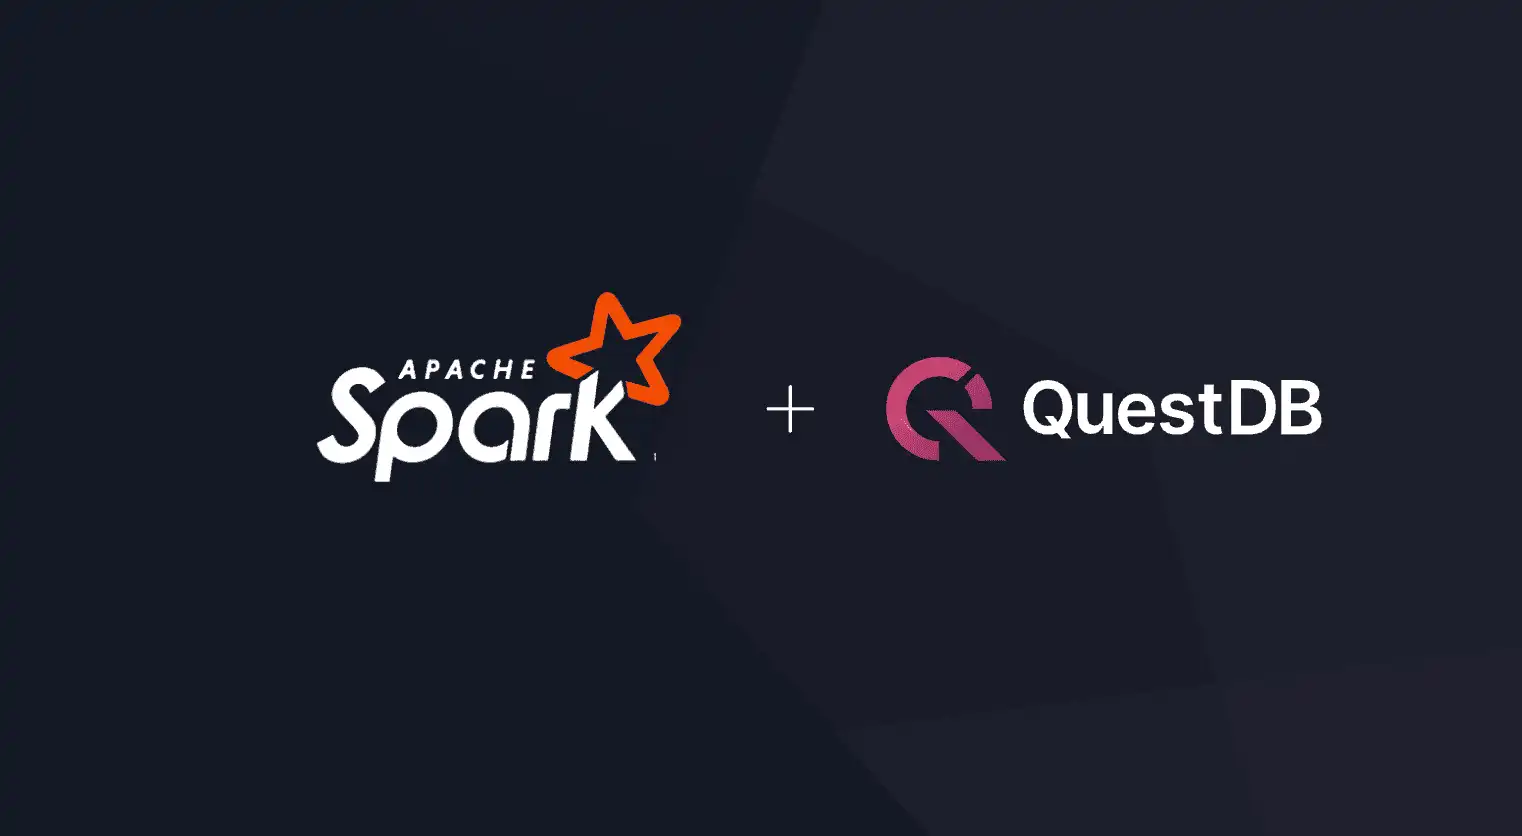 Apache Spark logo and QuestDB logo